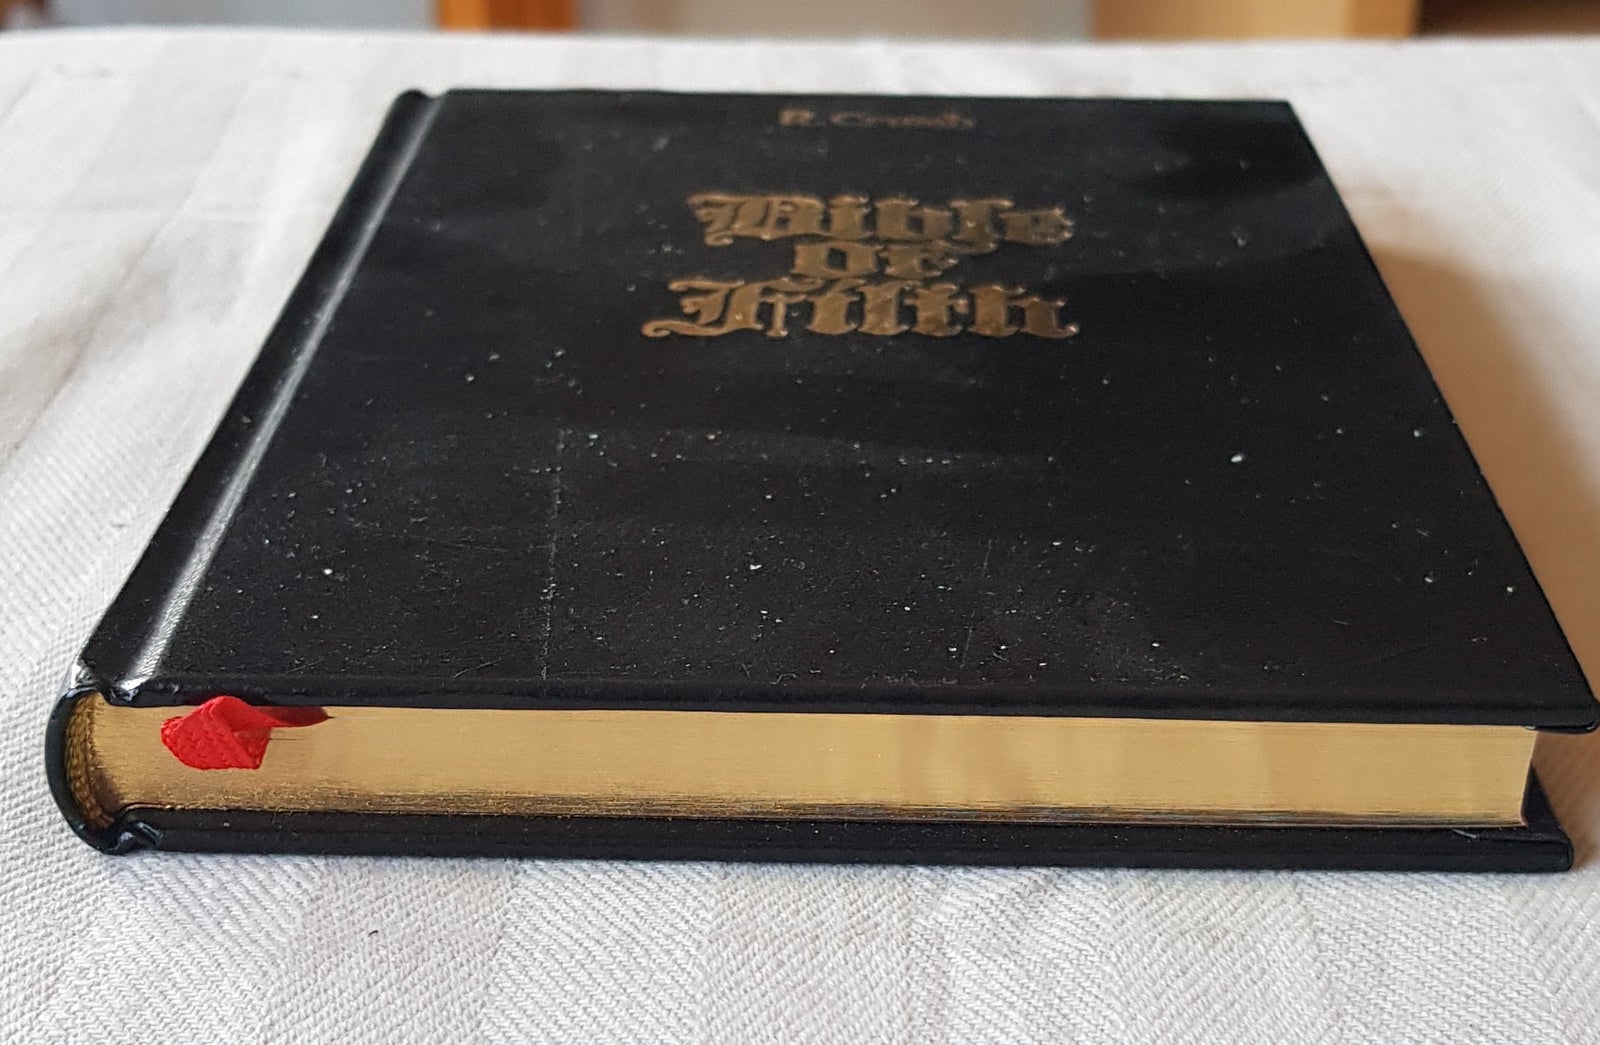 Bible Of Filth, Robert Crumb, Tegneserie